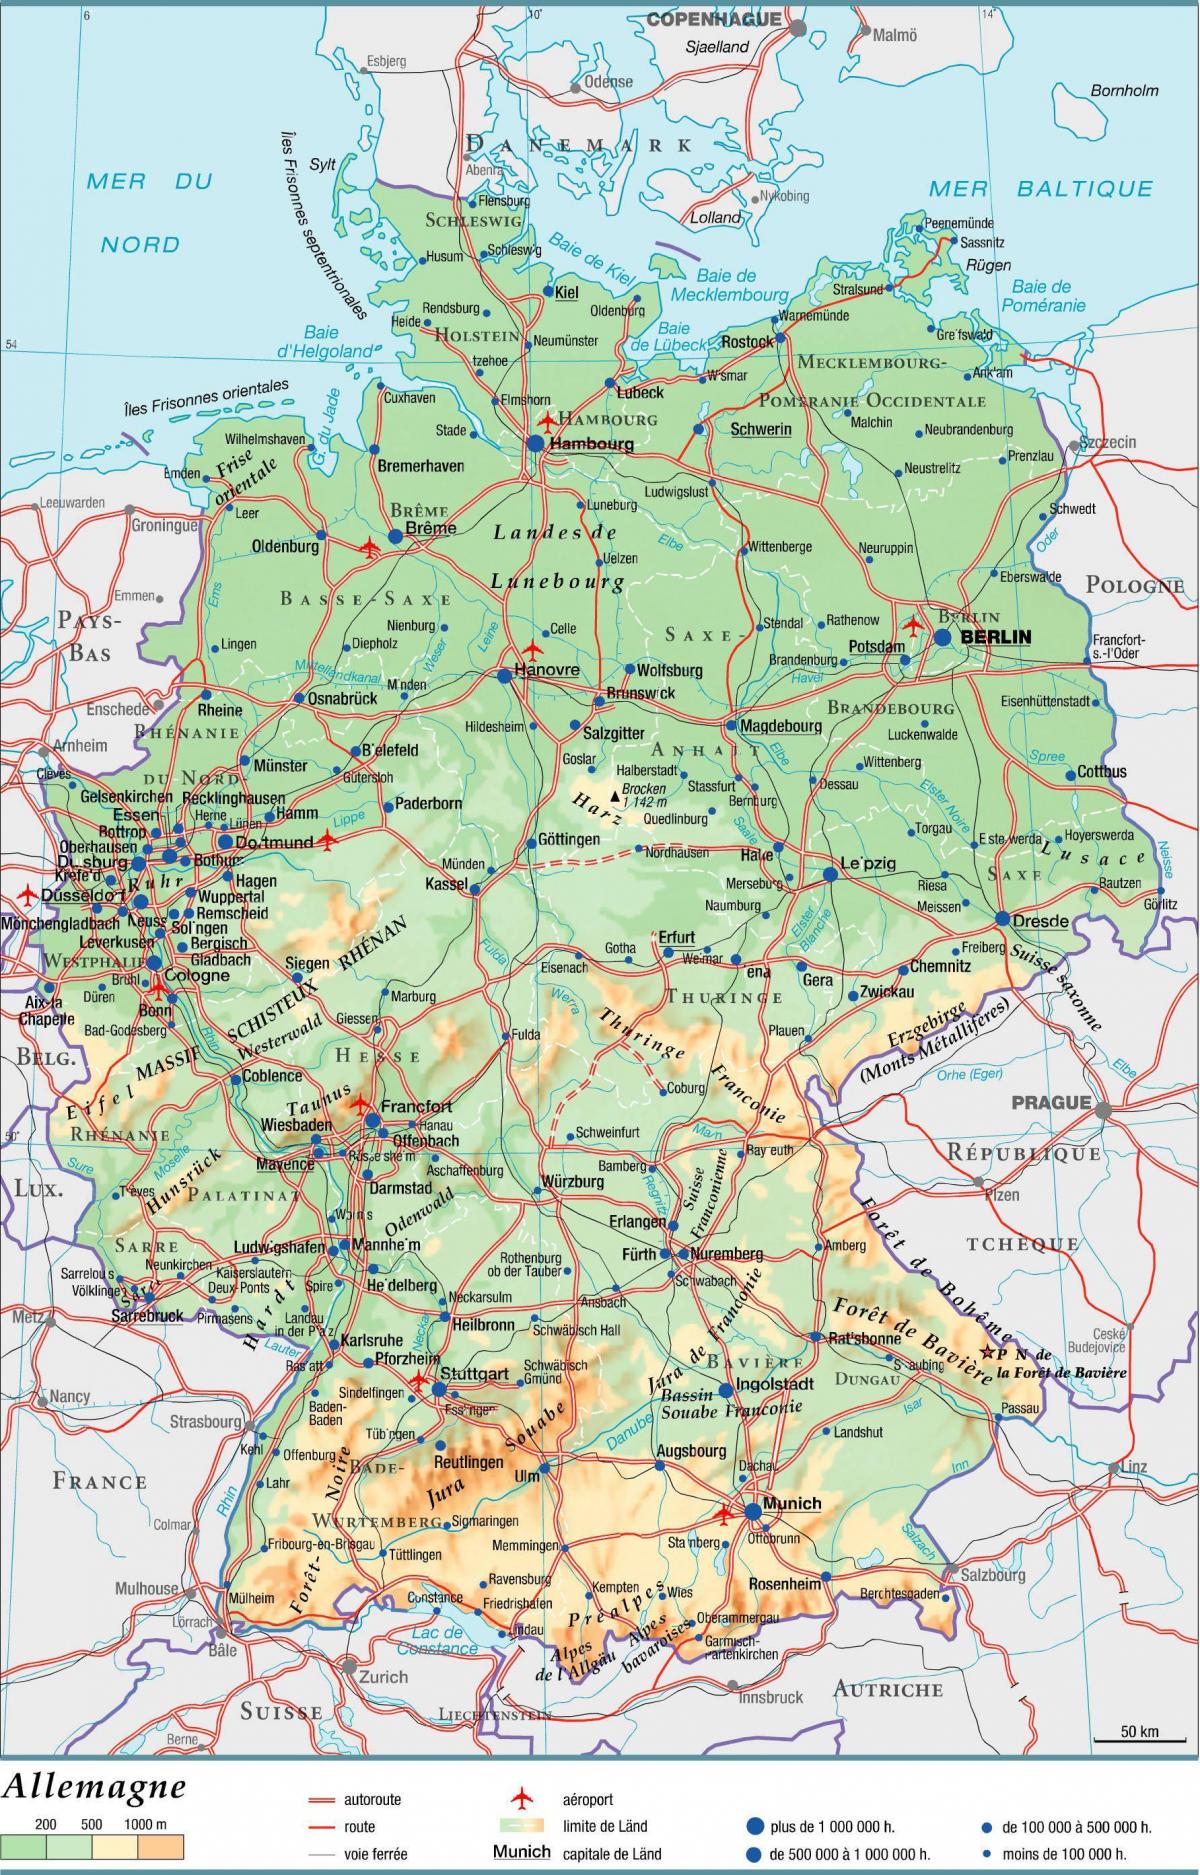 خريطة كبيرة لألمانيا